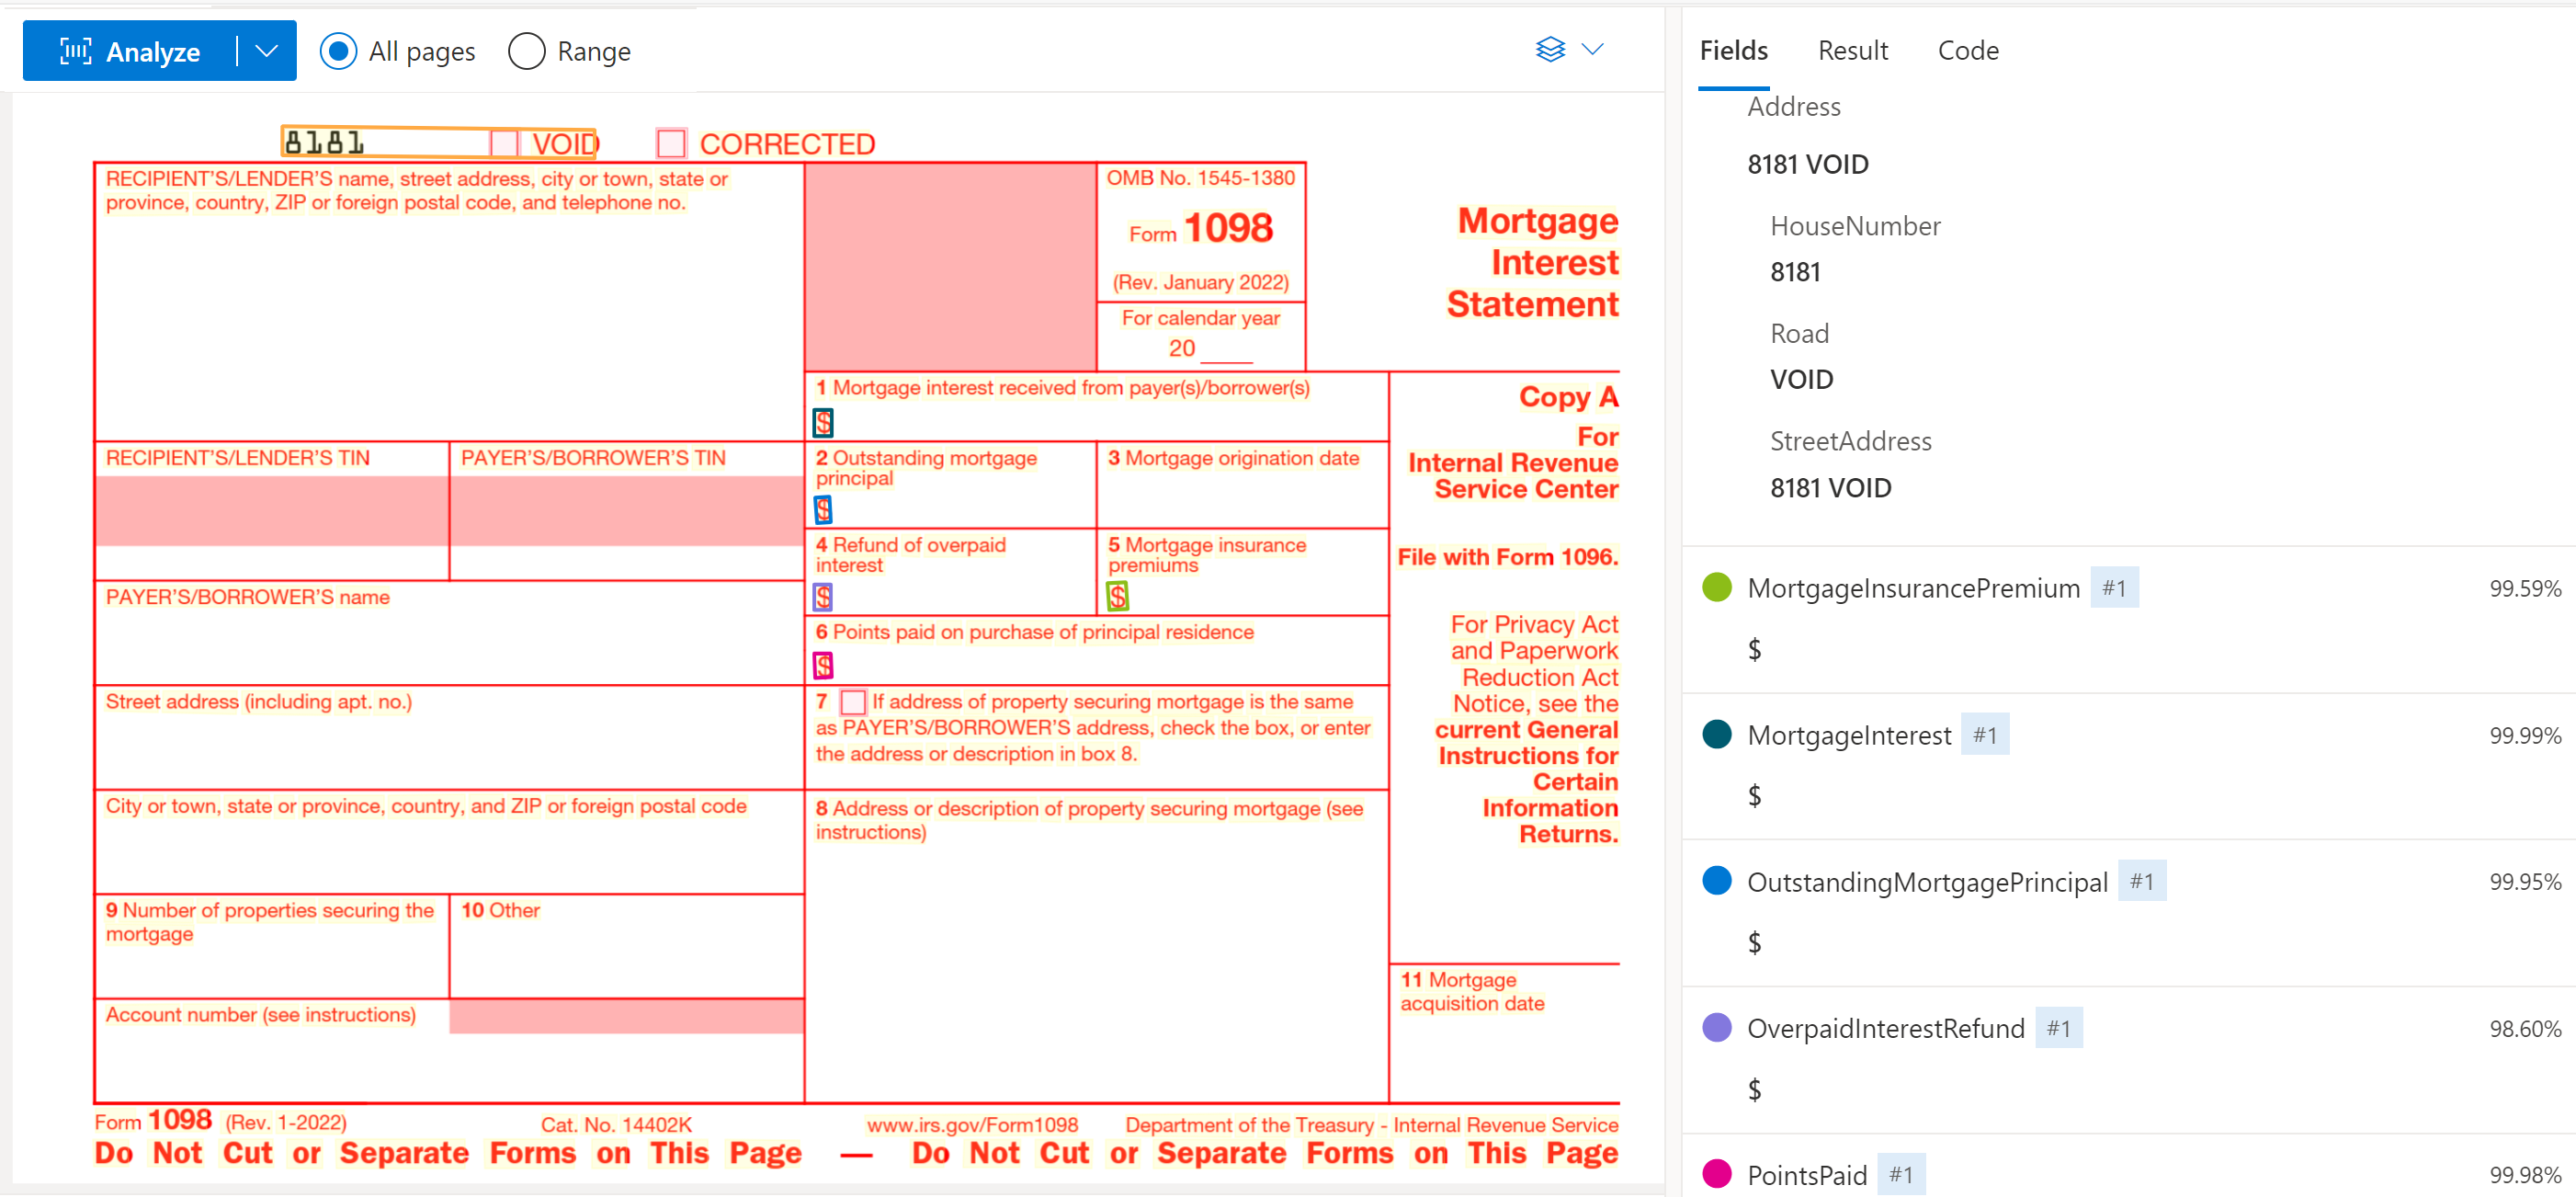 Zrzut ekranu przedstawiający formularz podatkowy US 1098 przeanalizowany w narzędziu Document Intelligence Studio.